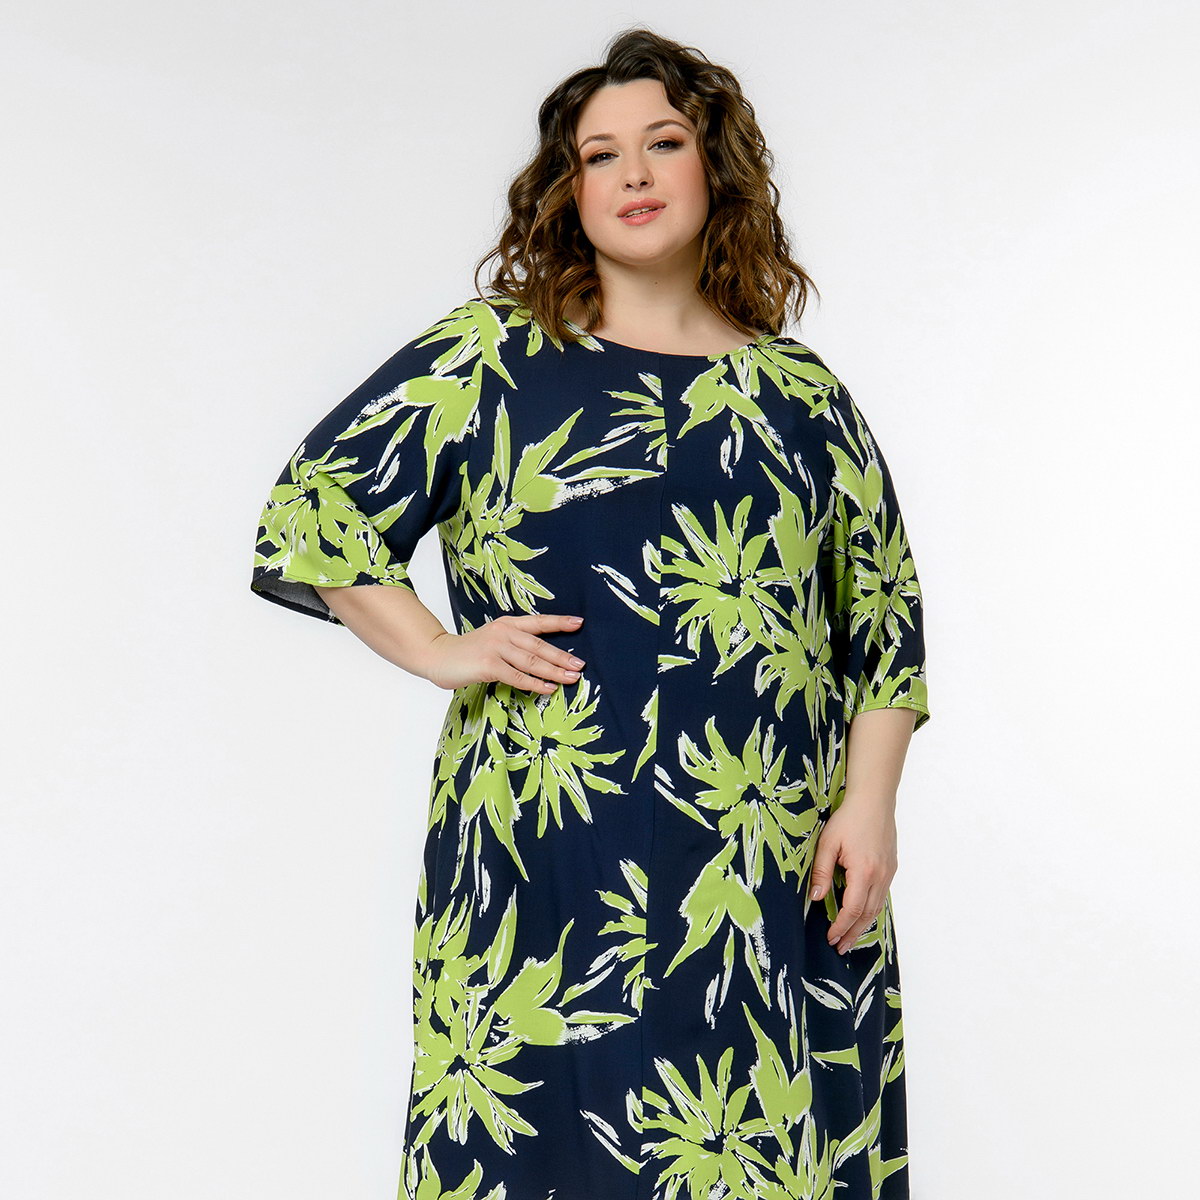 Платье из штапеля, свободное, принт "тропические листья"